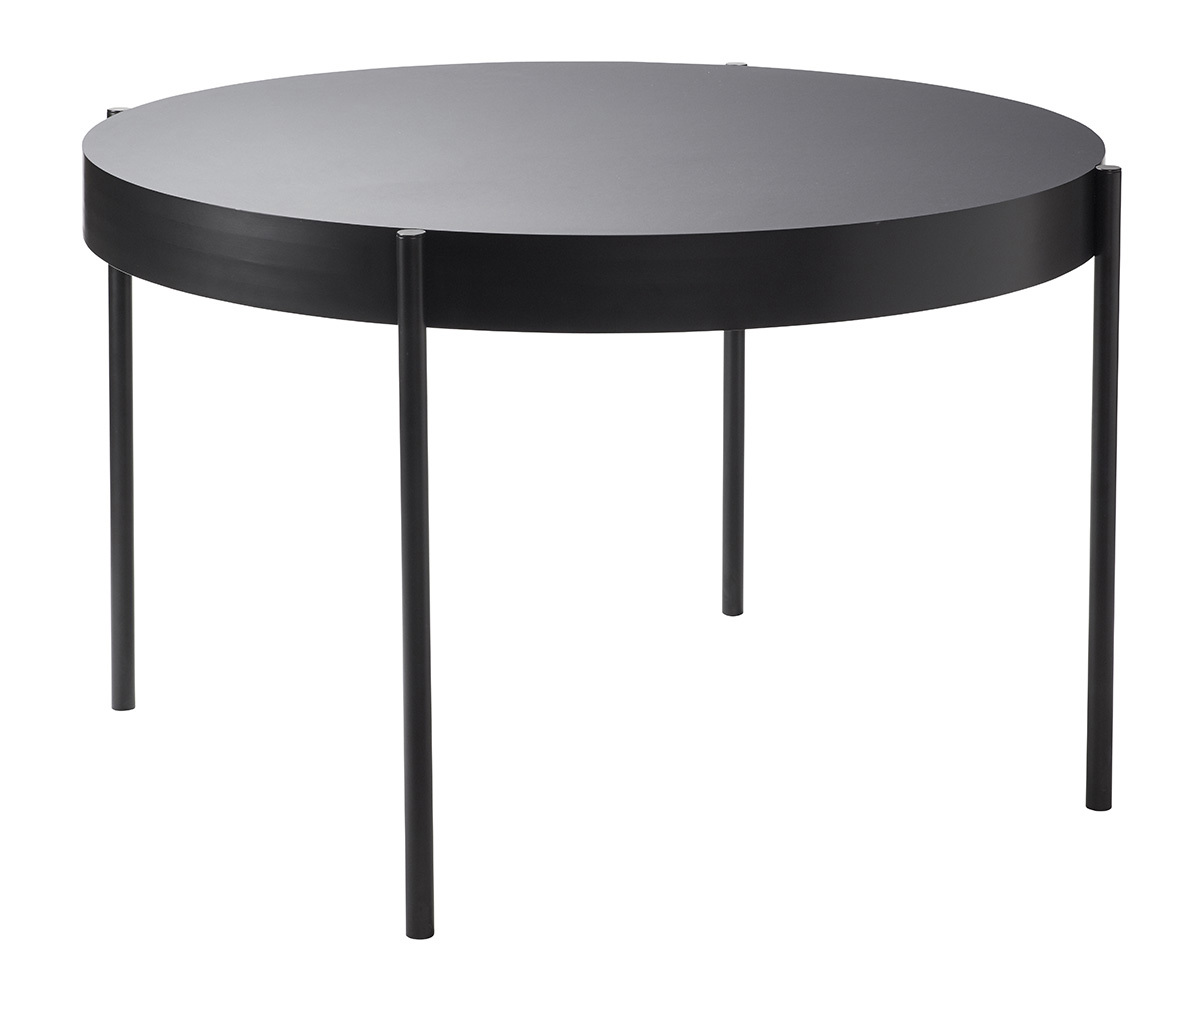 Verpan Series 430 Dining Table Black, ø 120 cm